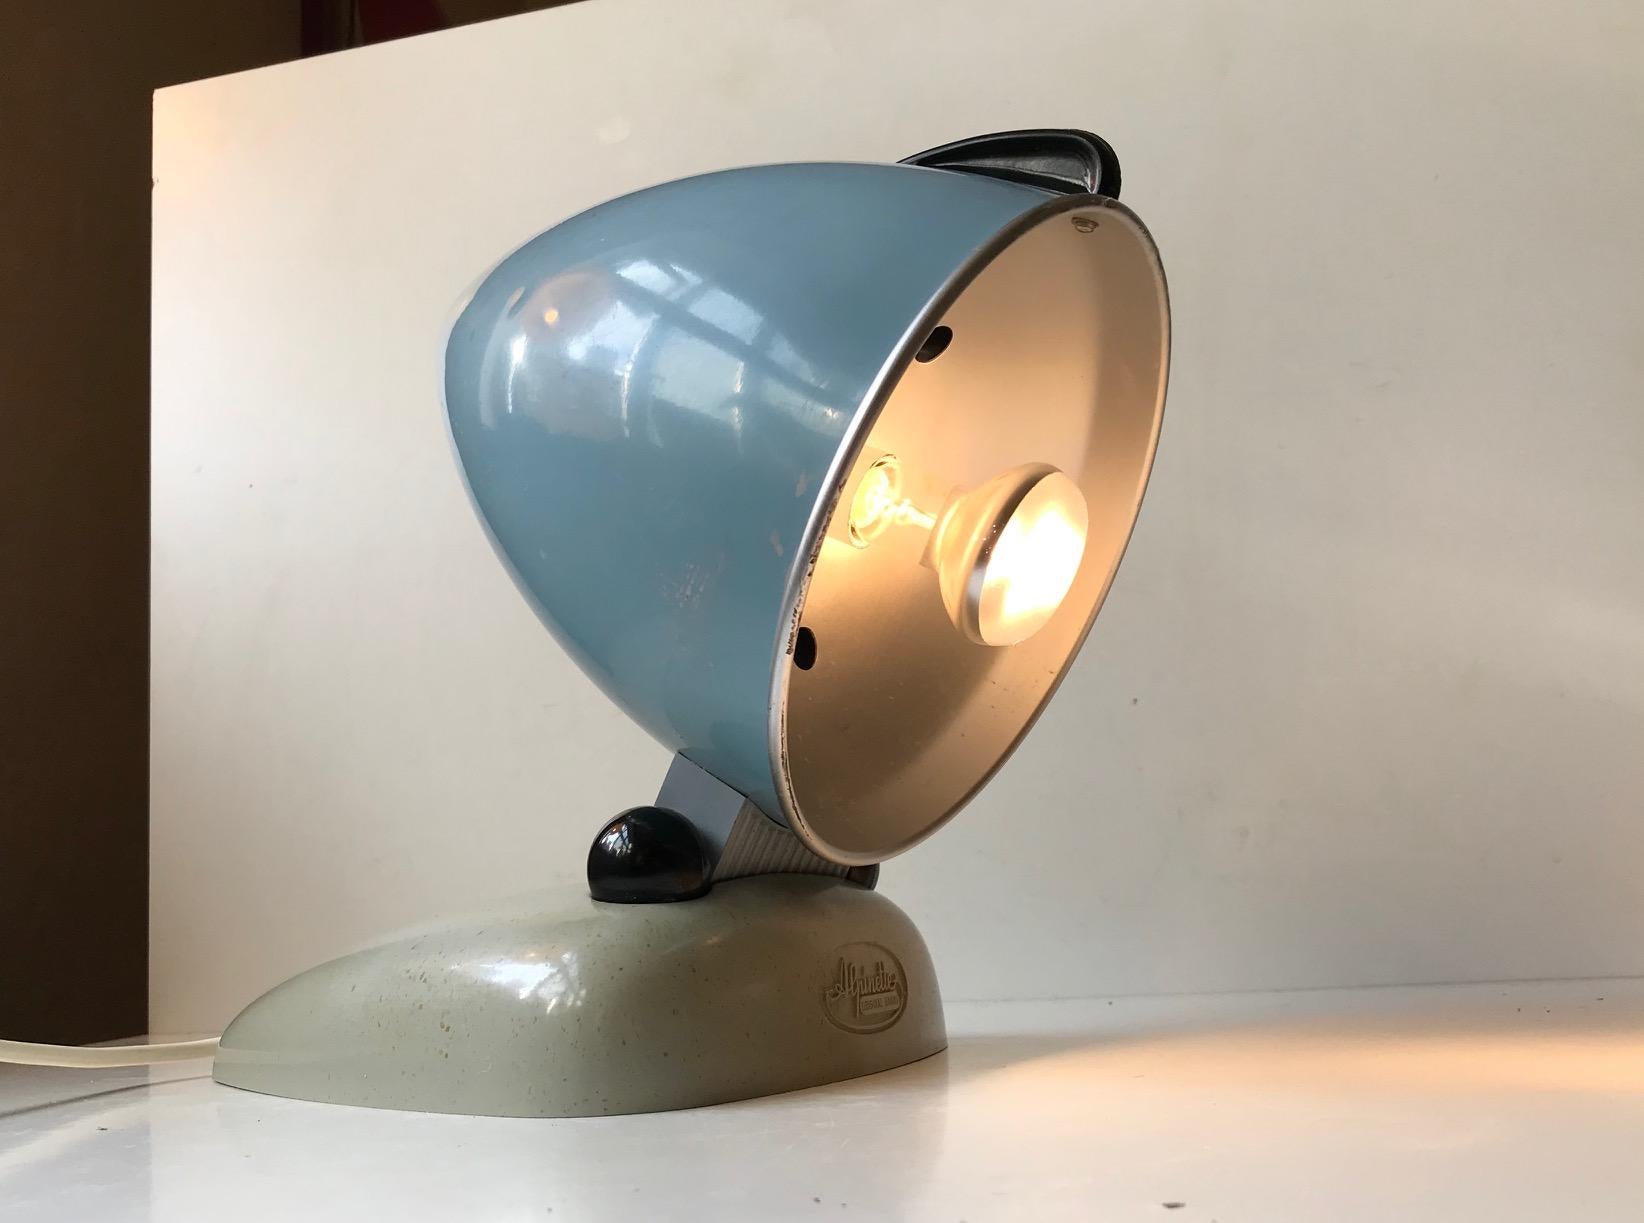 La lampe Alpinette de Hanau était initialement destinée à la luminothérapie. Il date des années 1950 et possède un merveilleux design Bullit - streamline. Ce style a été popularisé par des personnes comme Raymond Loewy et Norman Bel Geddes. Elle a